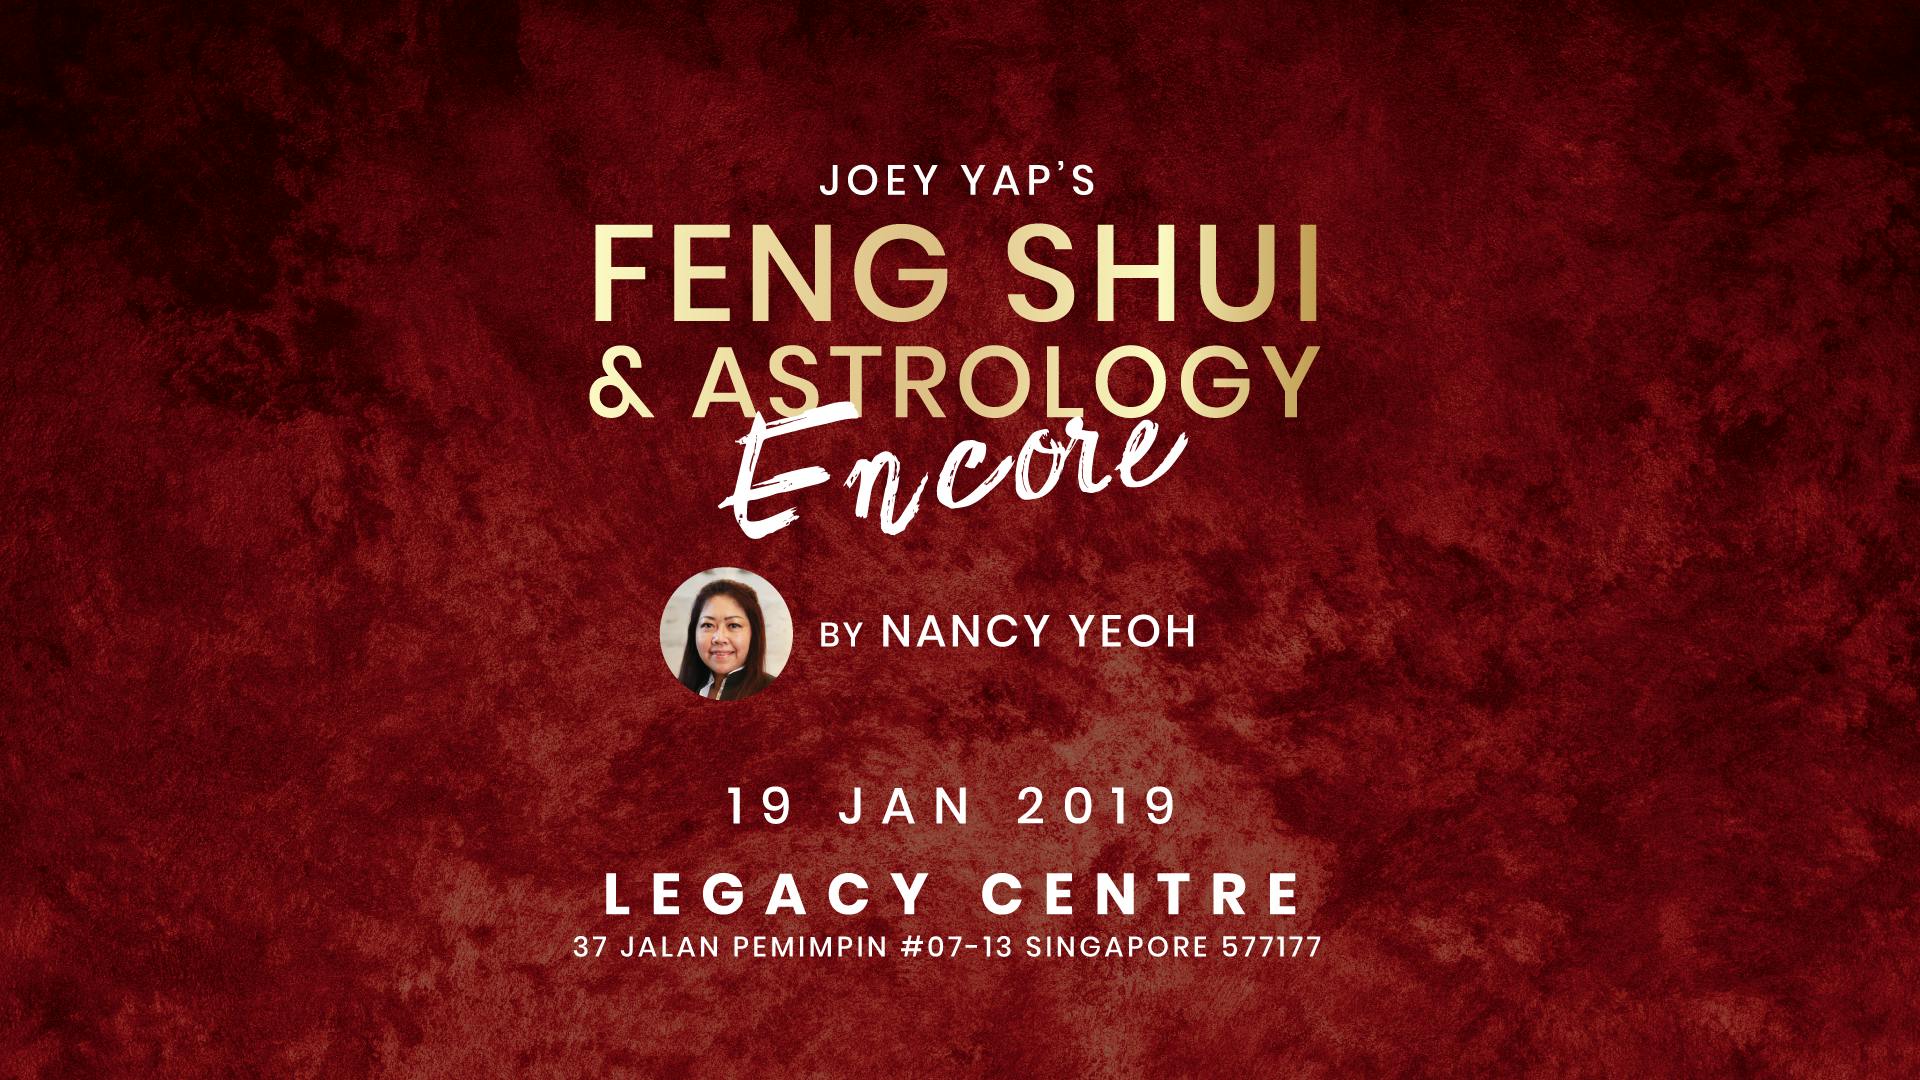 Joey Yap's Feng Shui & Astrology 2019 Encore By Nancy Yeoh